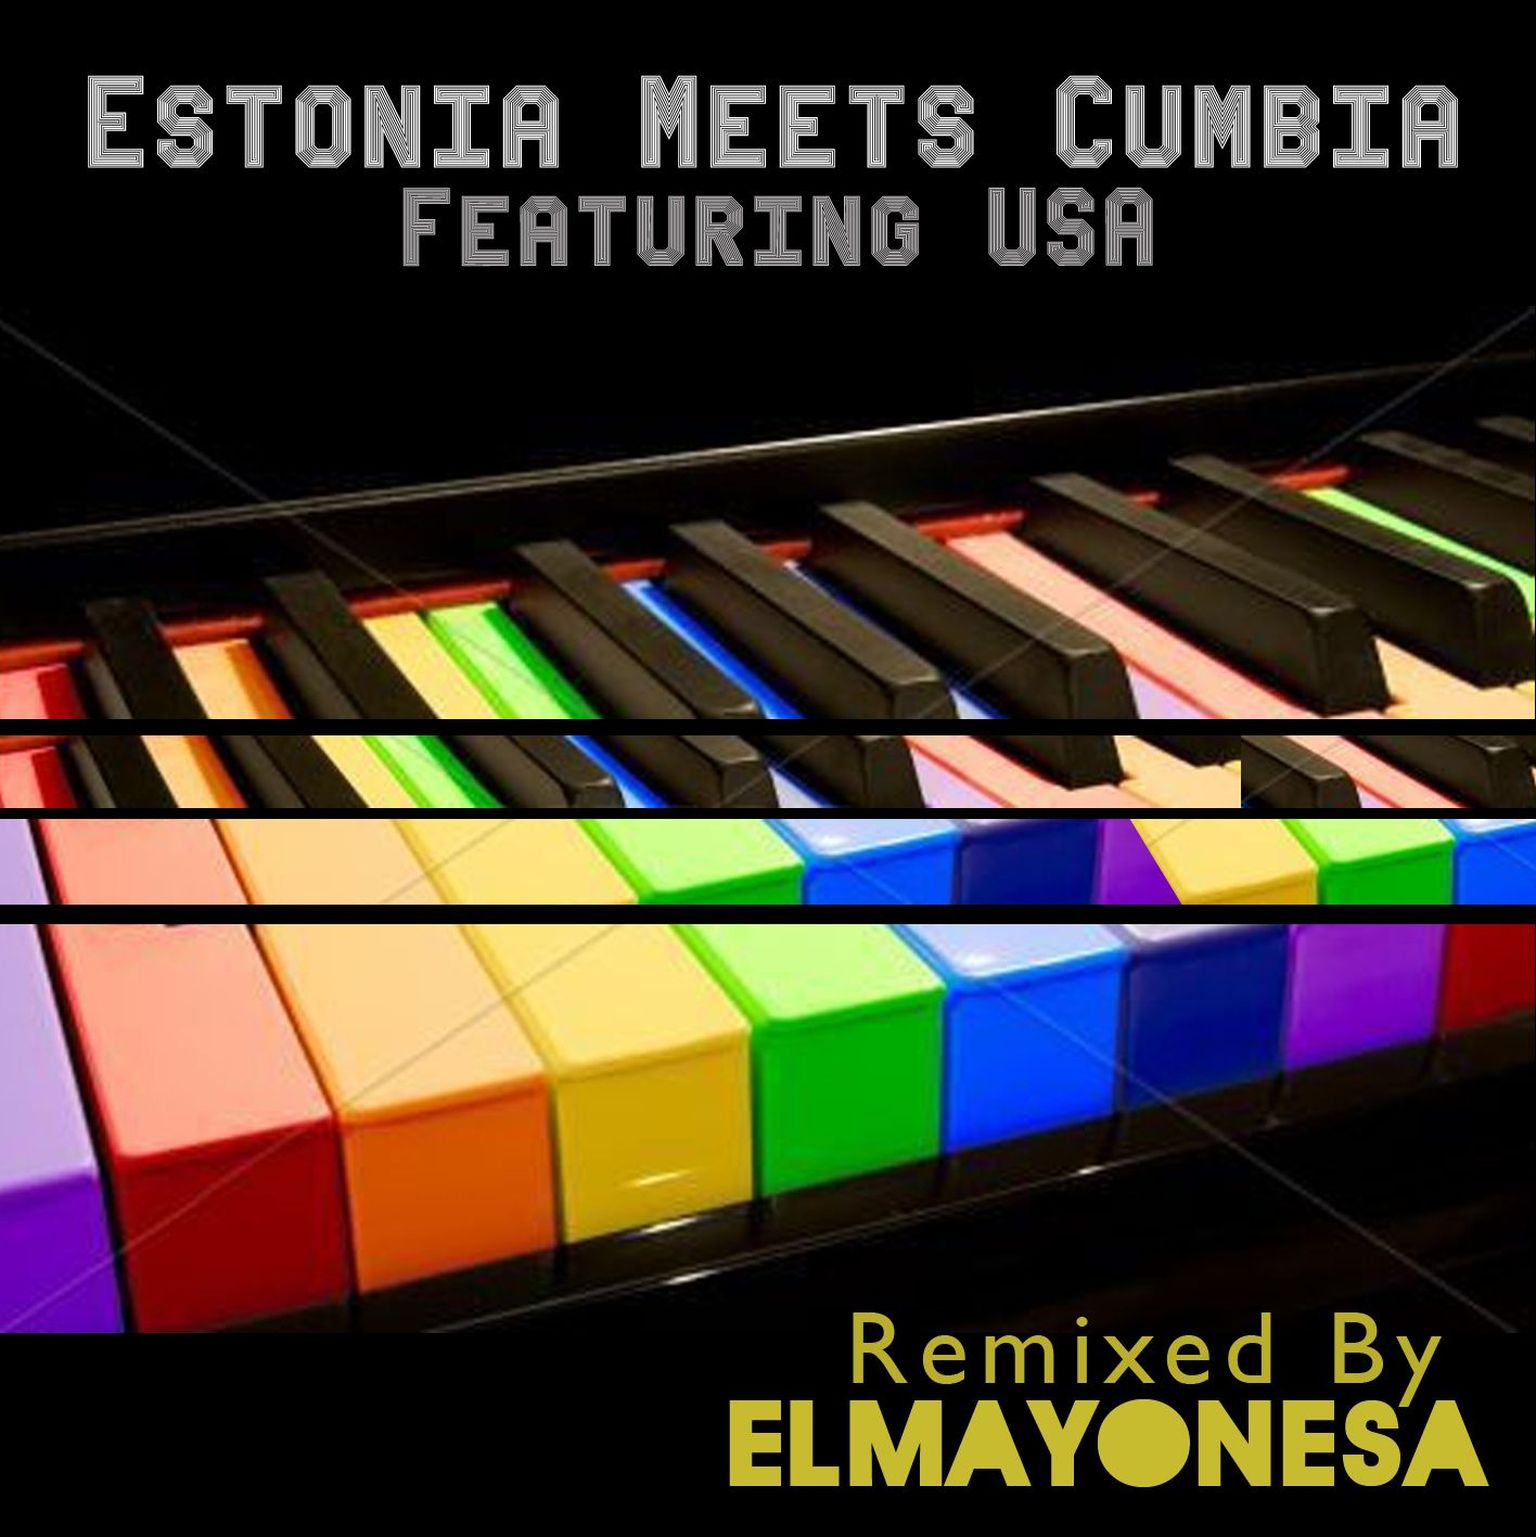 Estonia meets cumbia